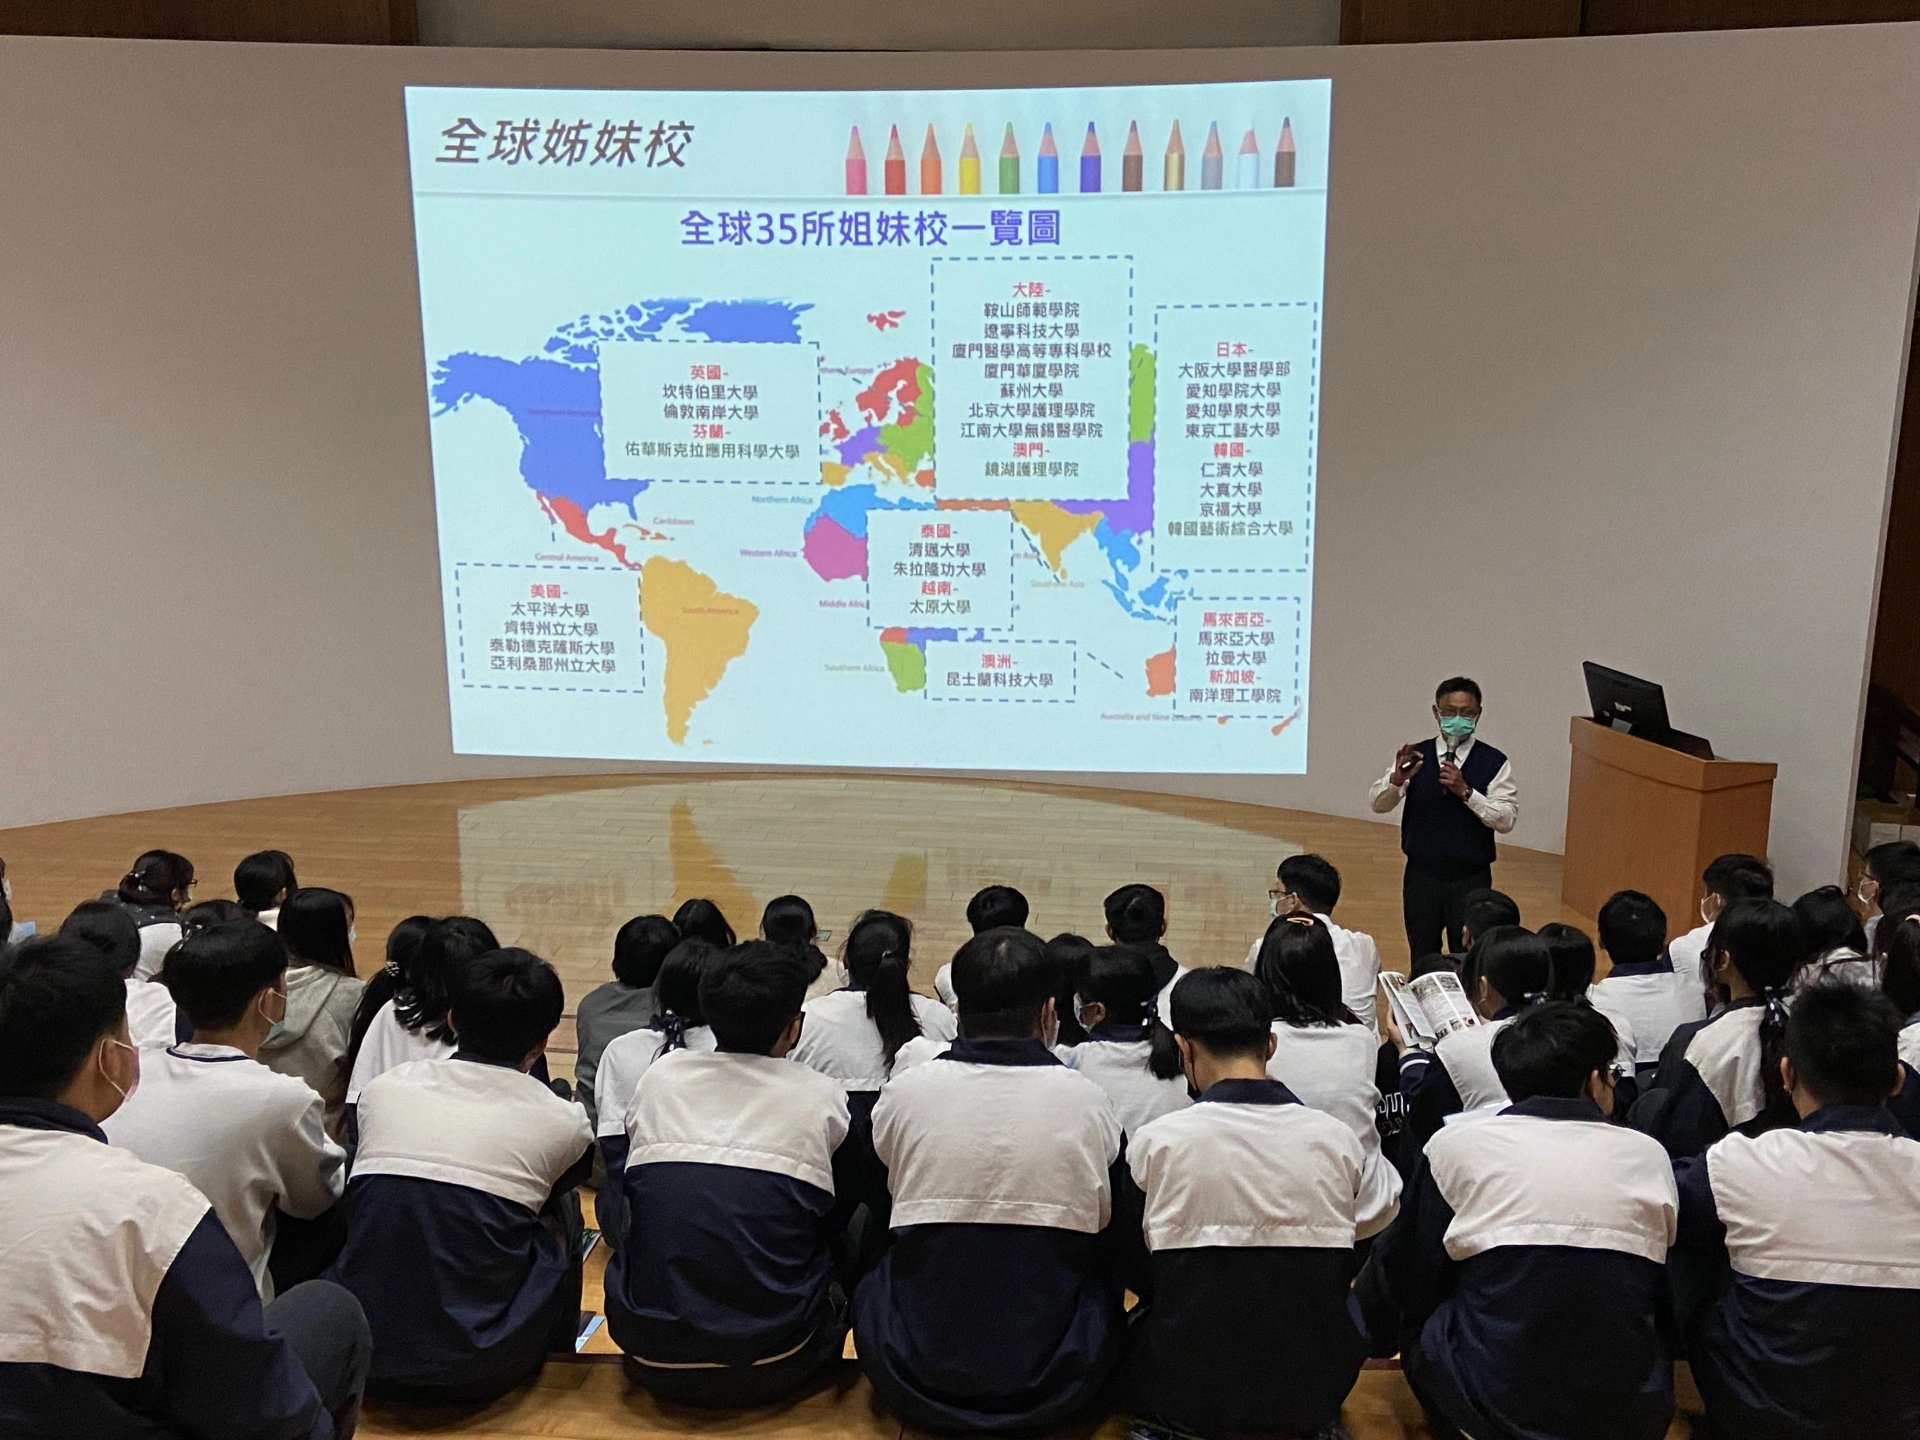 慈科大有35所海外姊妹校，王承斌組長和同學分享慈科大國際交流資訊。